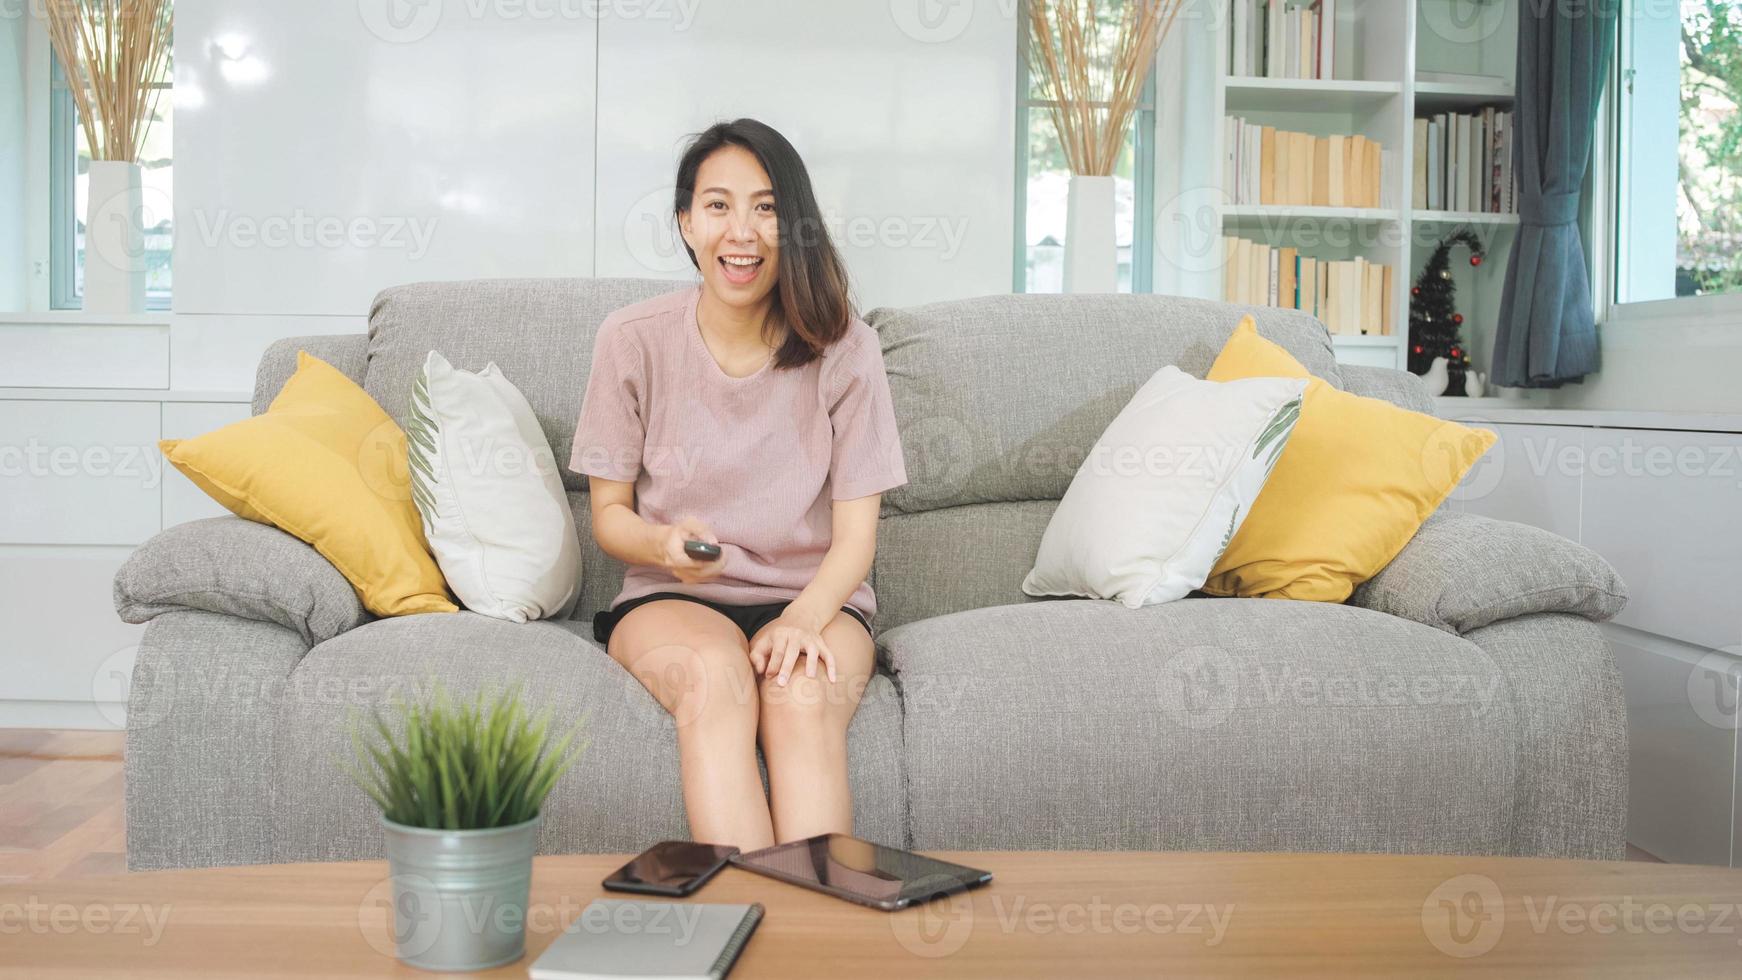 junge asiatische Teenager-Frau vor dem Fernseher zu Hause, weibliches Gefühl glücklich auf dem Sofa im Wohnzimmer liegend. Lifestyle-Frau entspannt sich morgens zu Hause Konzept. foto